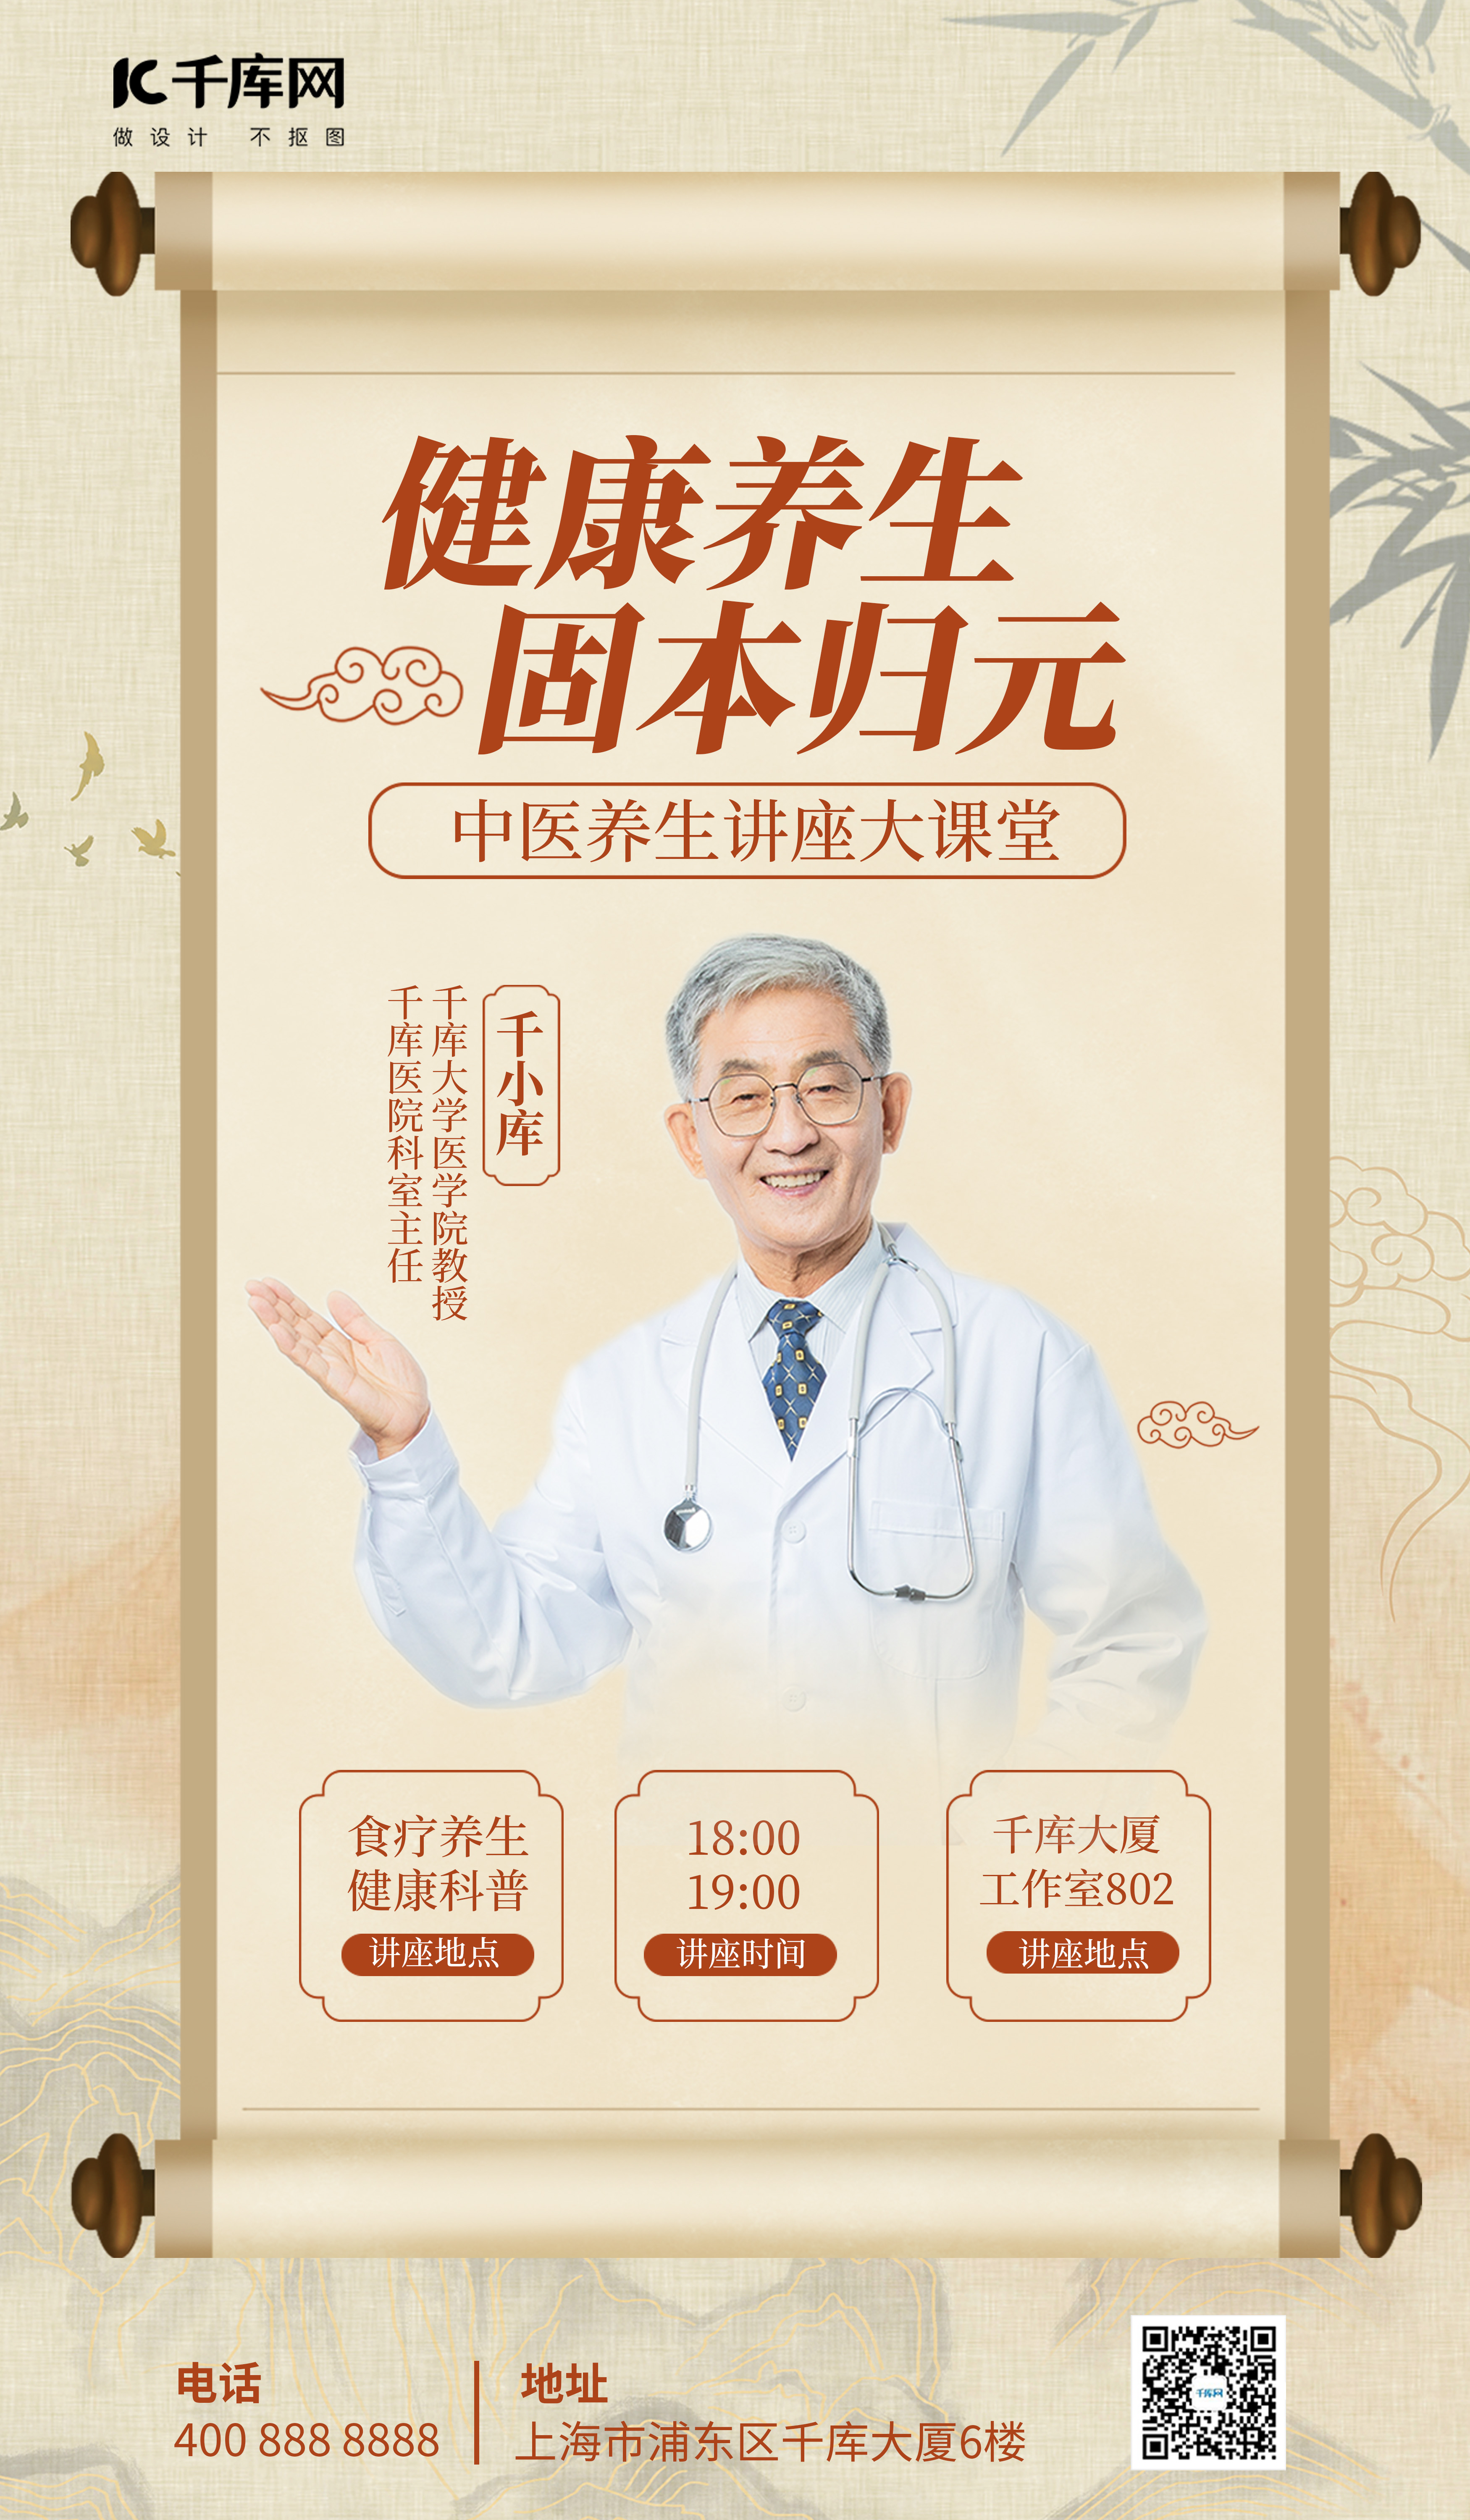 中医讲座教育讲坛黄色中国风广告宣传海报图片